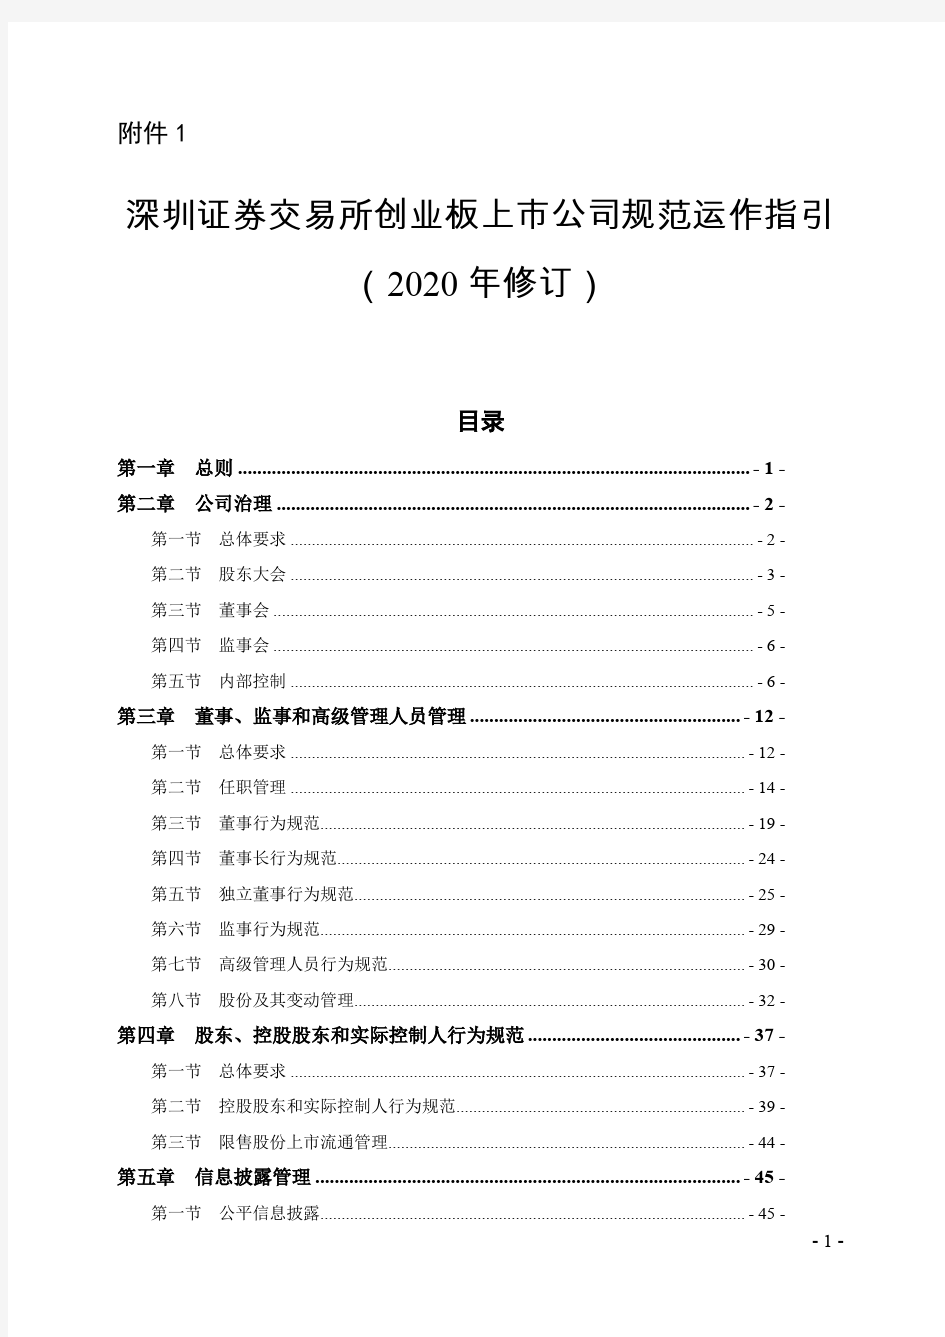 《深圳证券交易所创业板上市公司规范运作指引(2020年修订)》